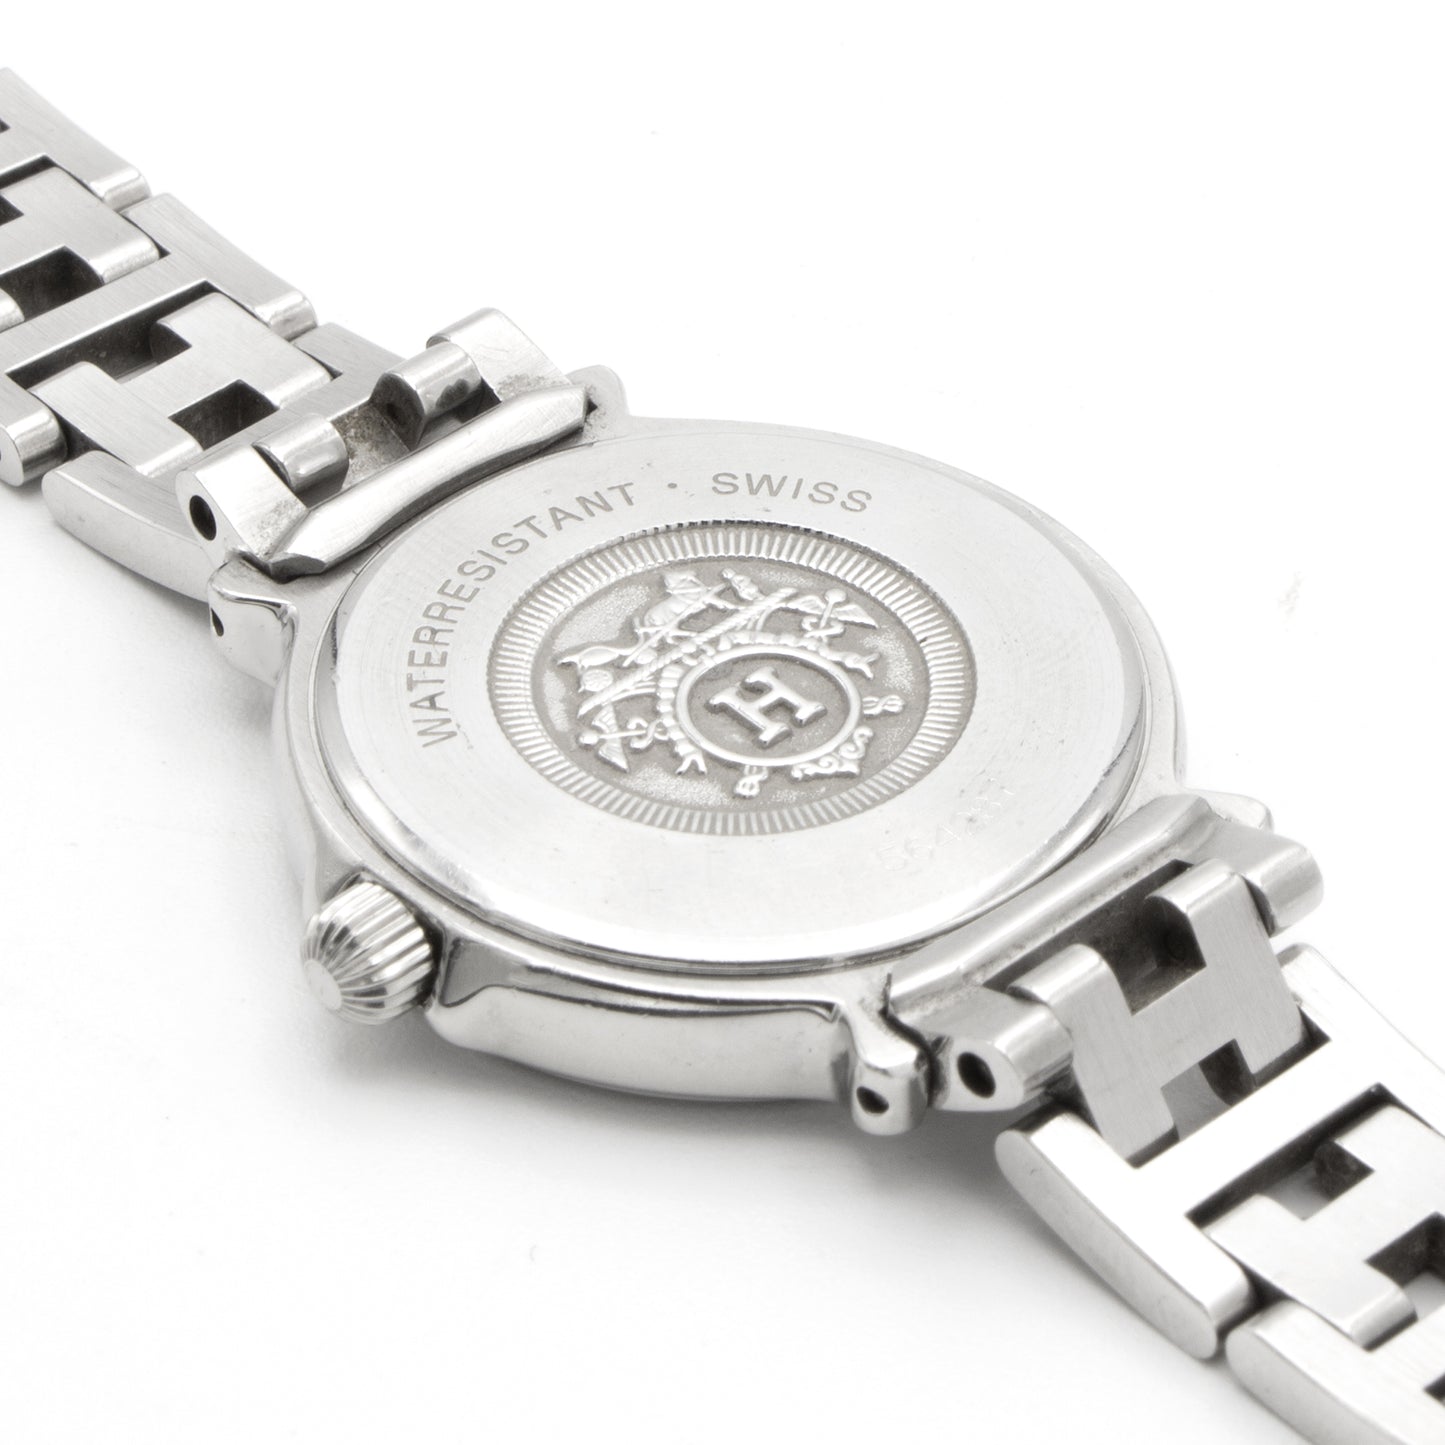 Hermès Clipper 27mm watch